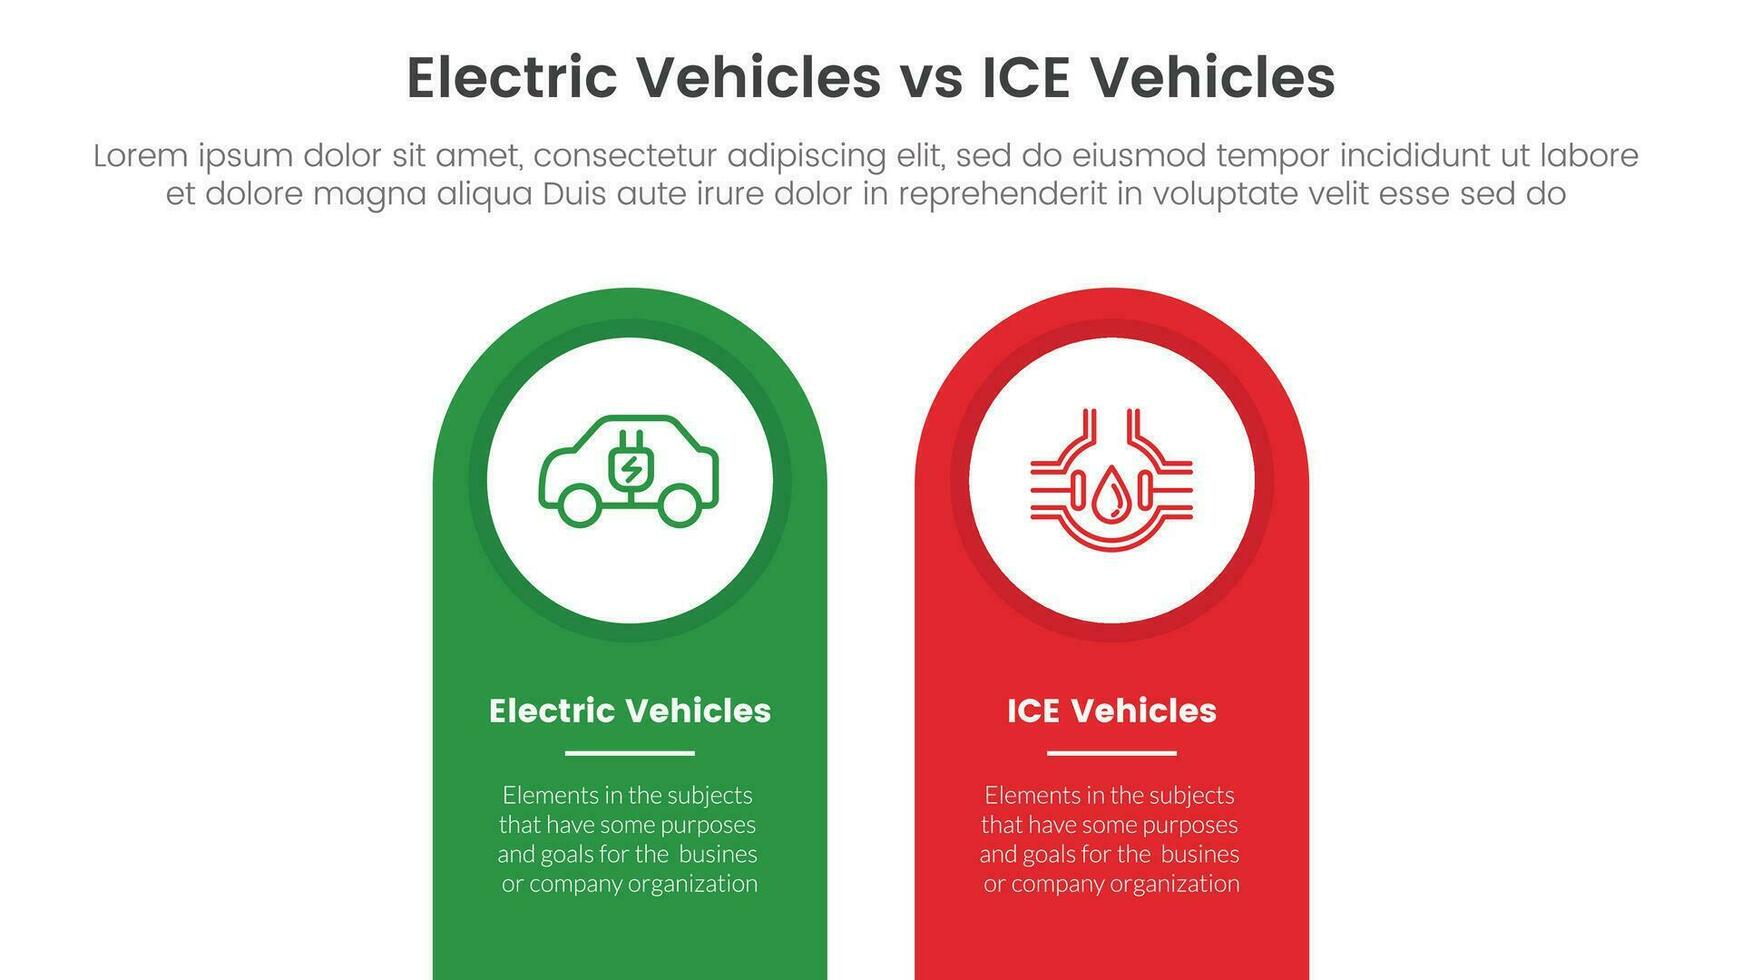 ev vs ijs elektrisch voertuig vergelijking concept voor infographic sjabloon banier met ronde vorm Aan top verticaal met twee punt lijst informatie vector